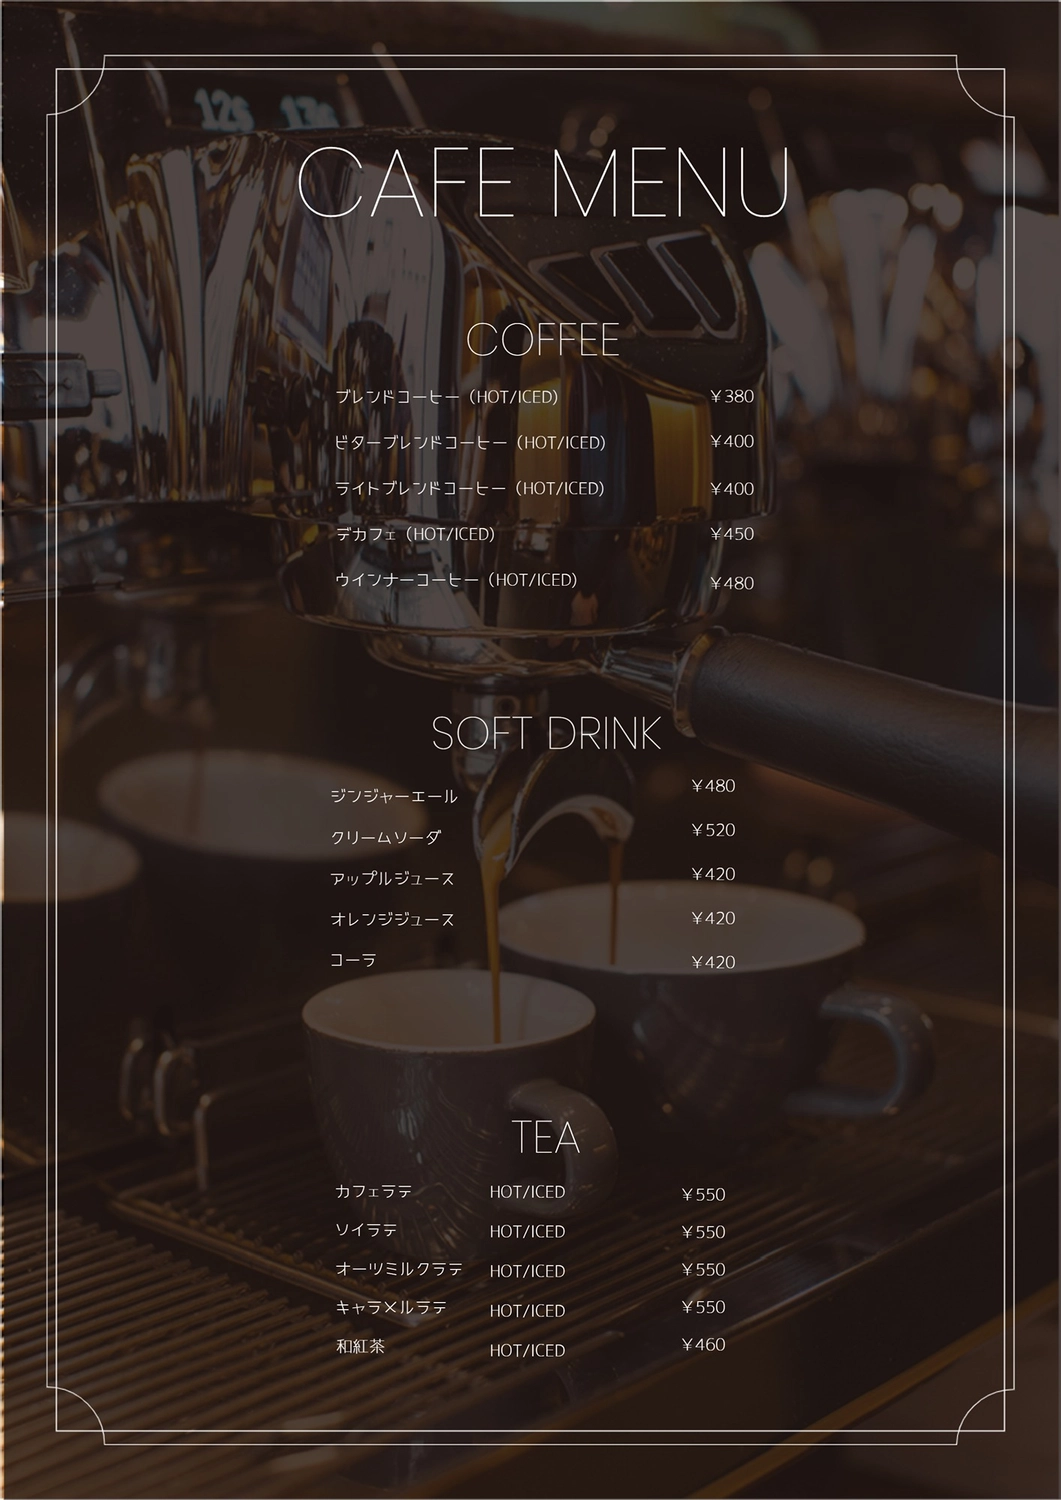 コーヒーのメニュー（エスプレッソマシン写真), menu, coffee, Price list, Menu template